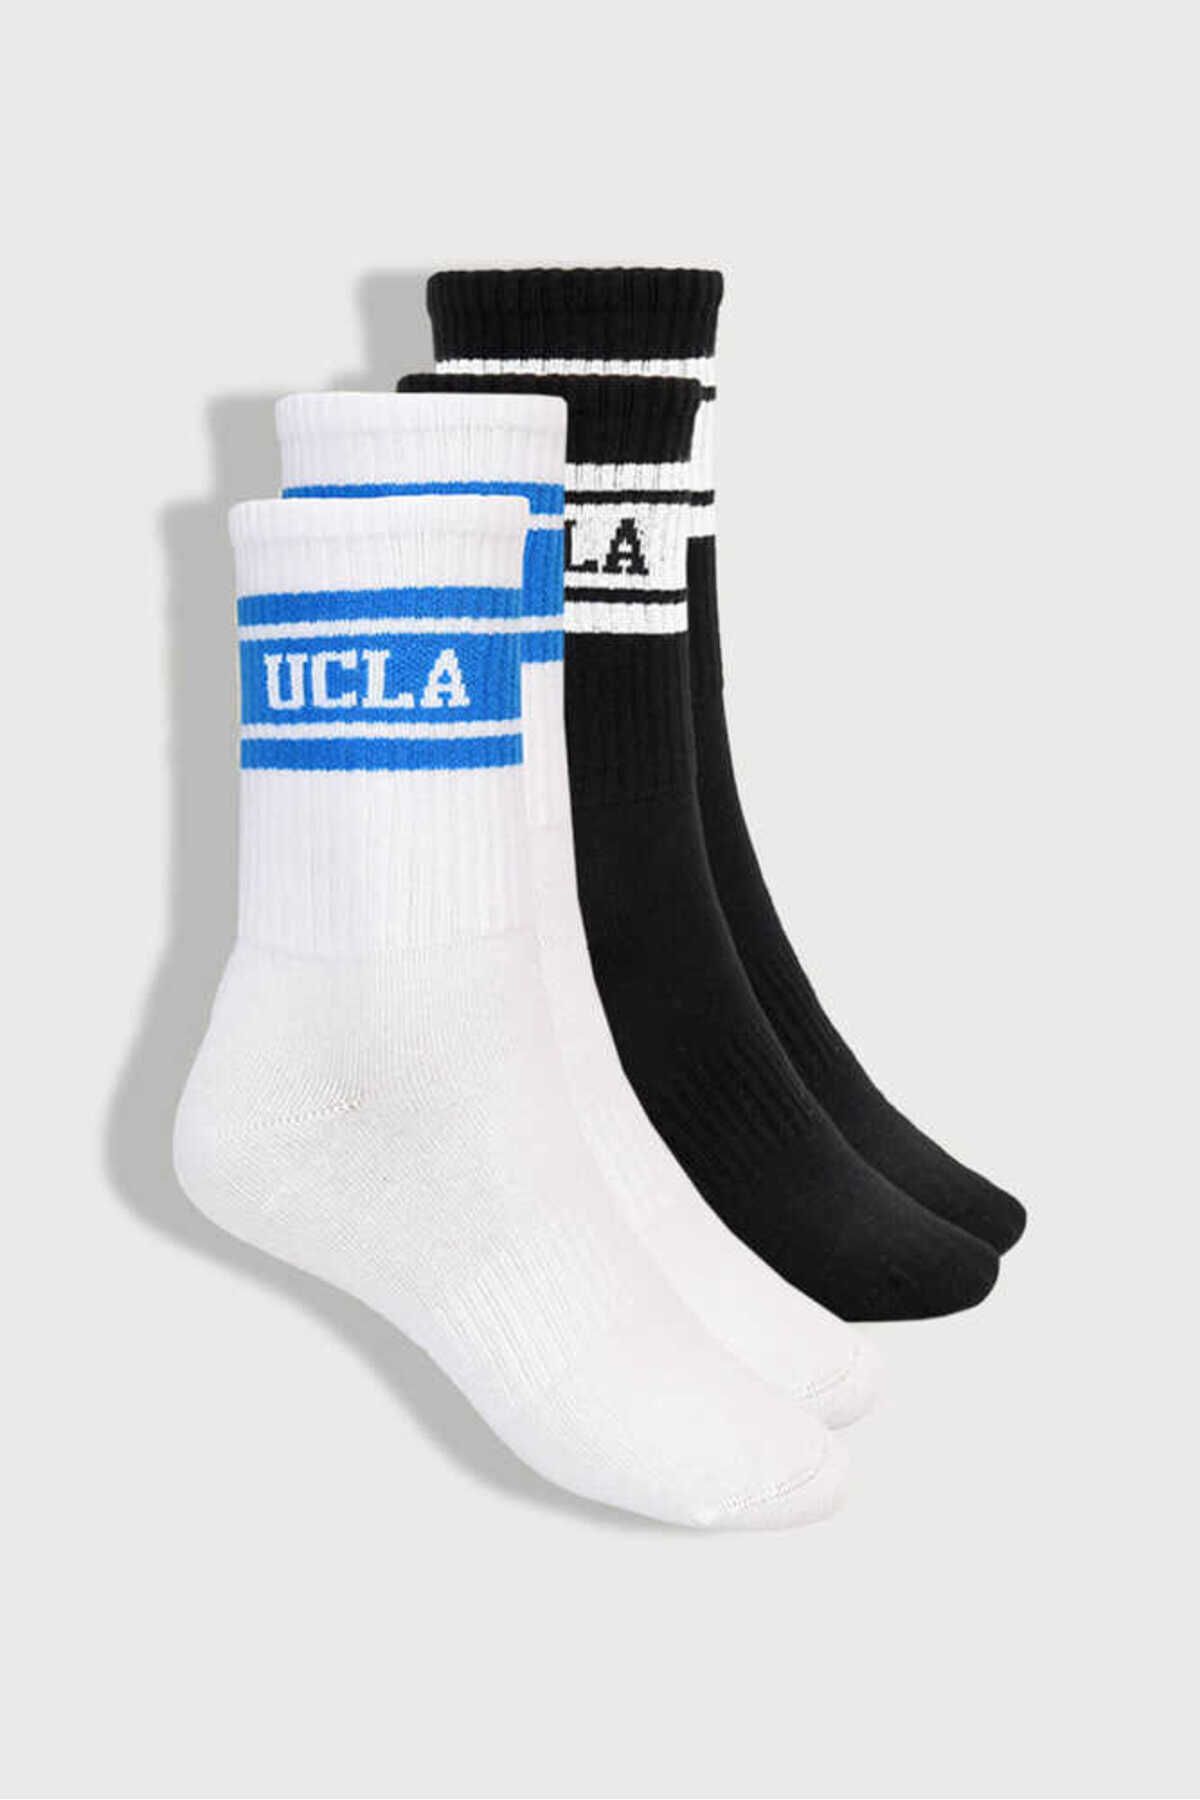 Ucla Calzada 2li Beyaz - Siyah Uzun Jakarlı Unisex Çorap